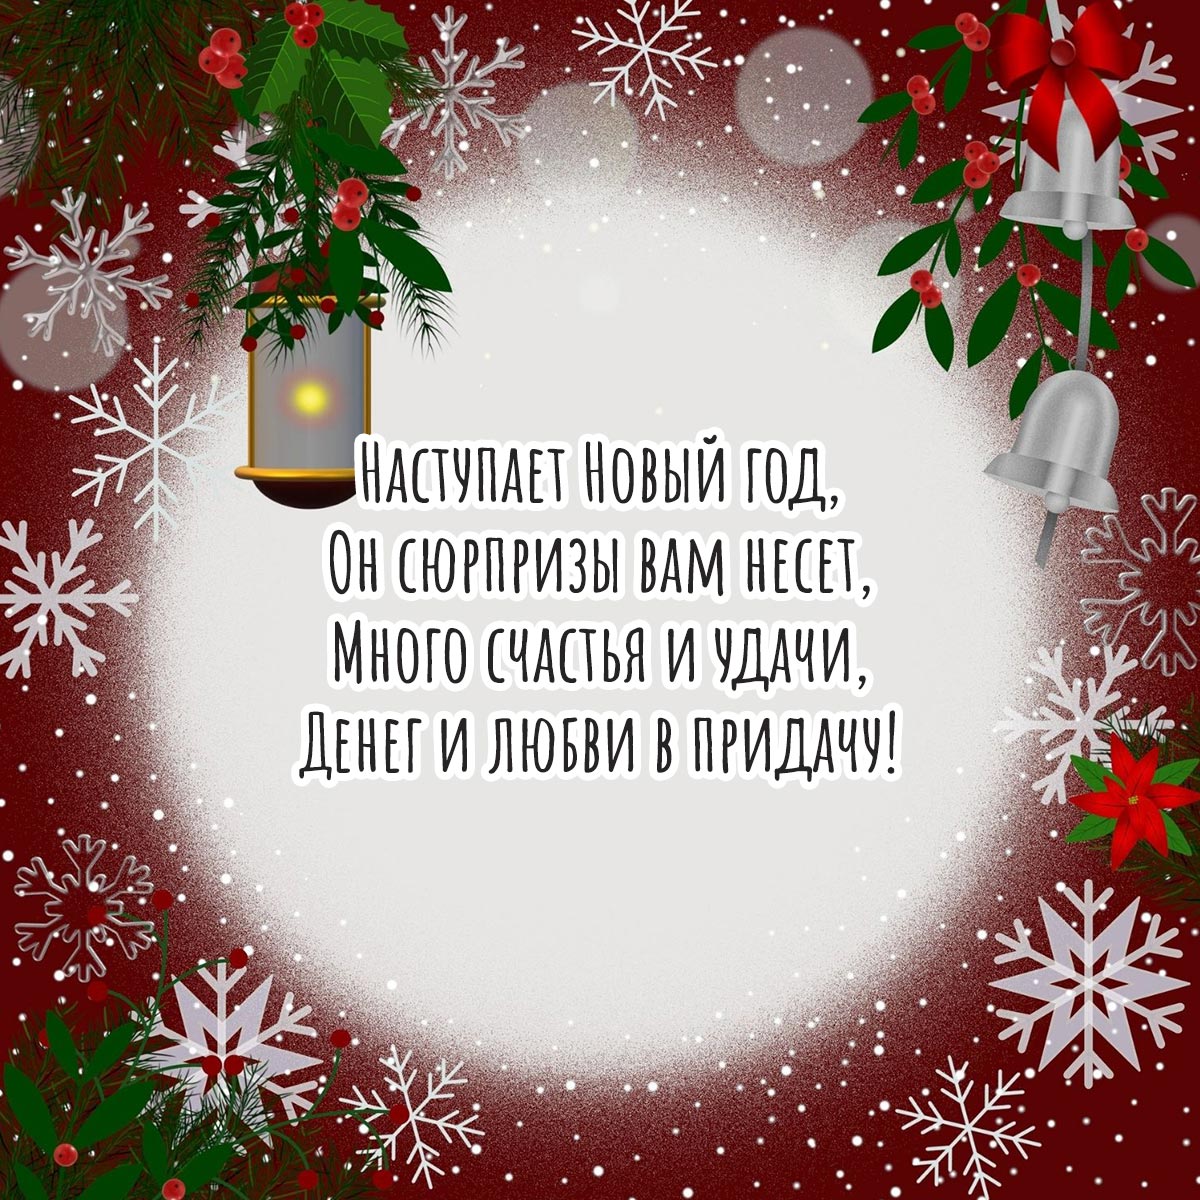 Красная открытка с текстом поздравления с Новым Годом в стихах со снежинками.